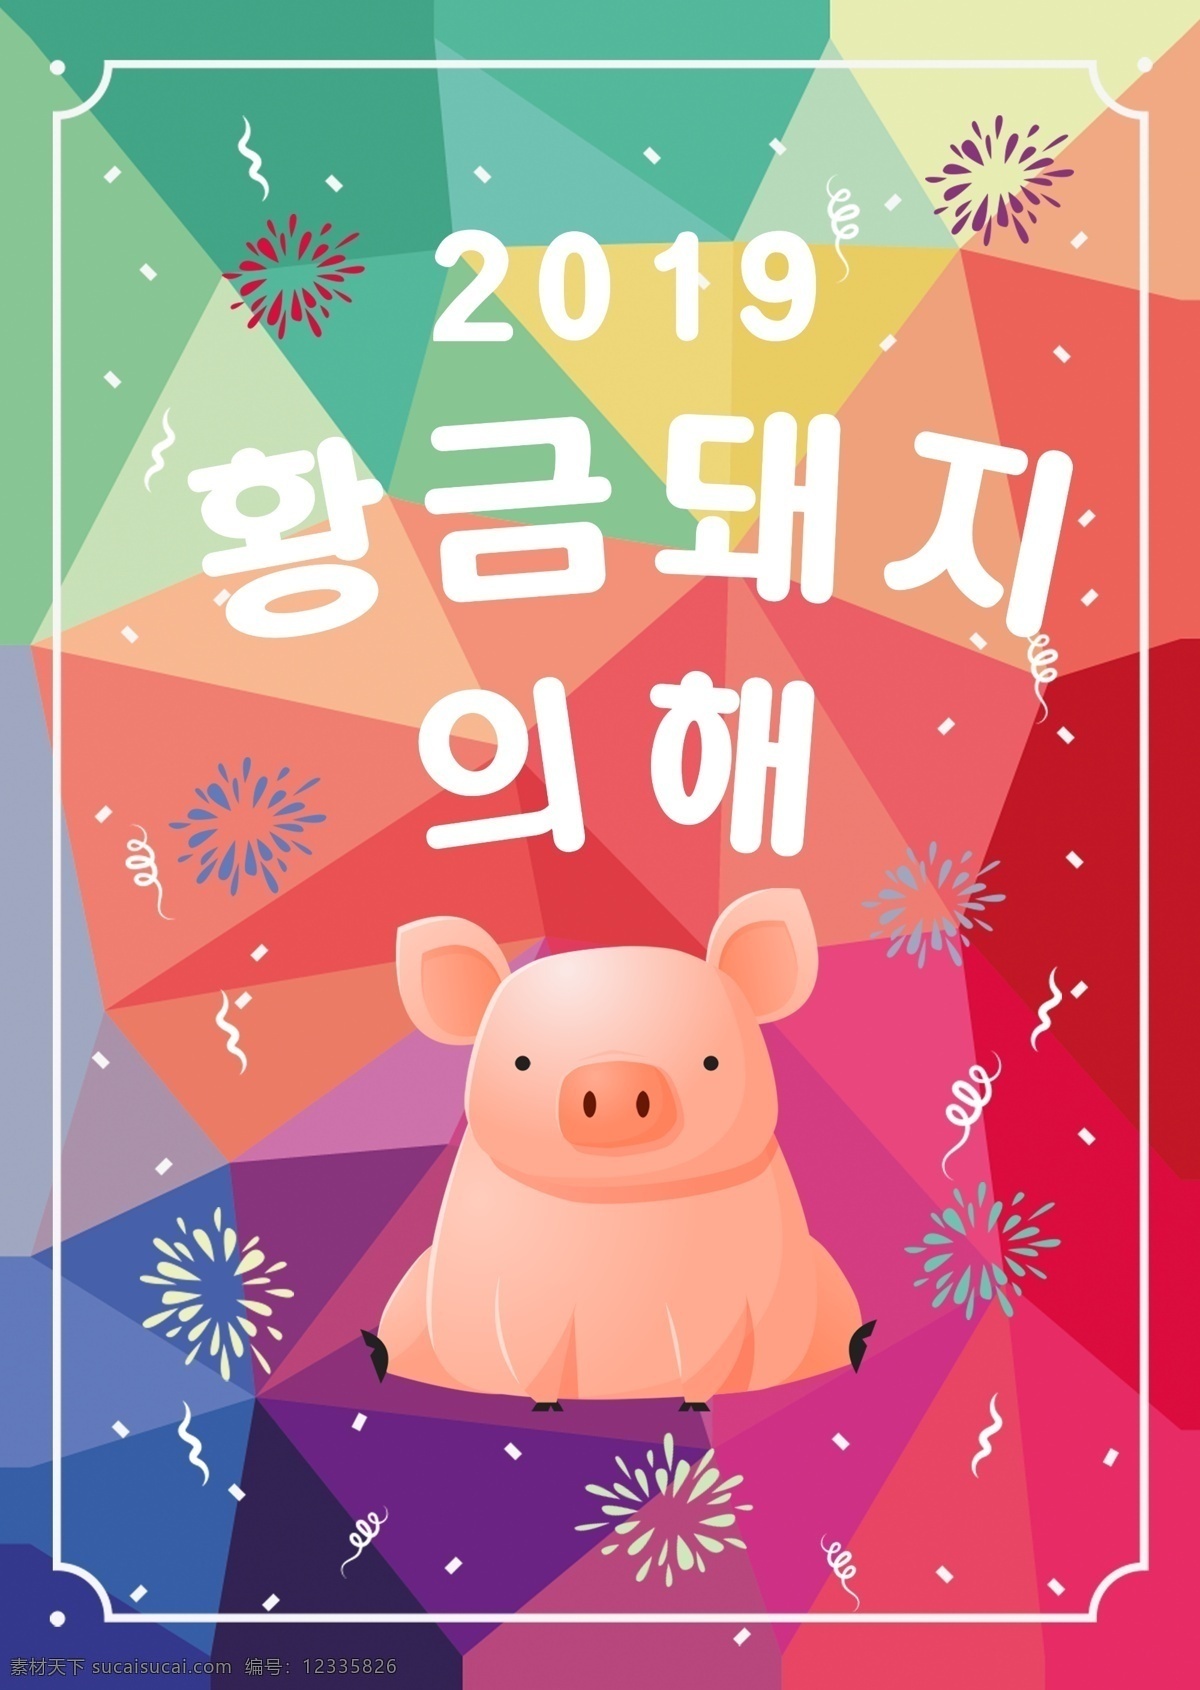 彩色 时尚 现代 2019 年金 猪 新年 海报 颜色 现代主义 金猪 粉 数字 花卉 红色 绿色 蓝色 喜悦